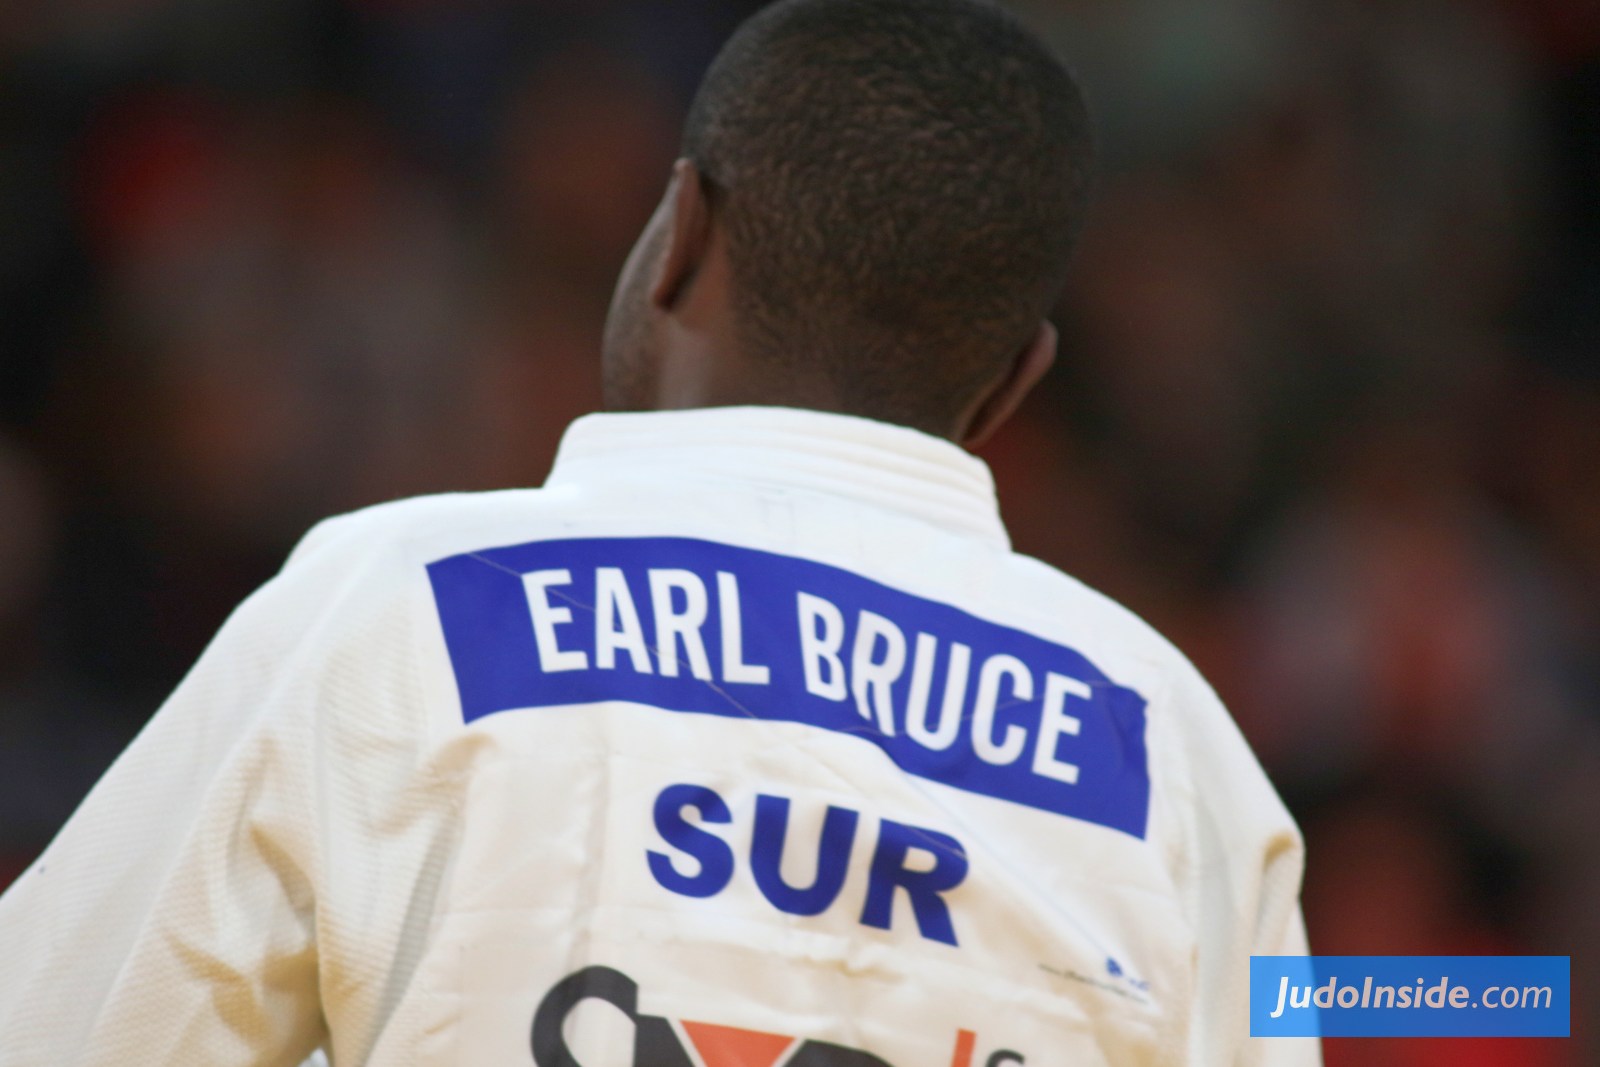 Earl Bruce